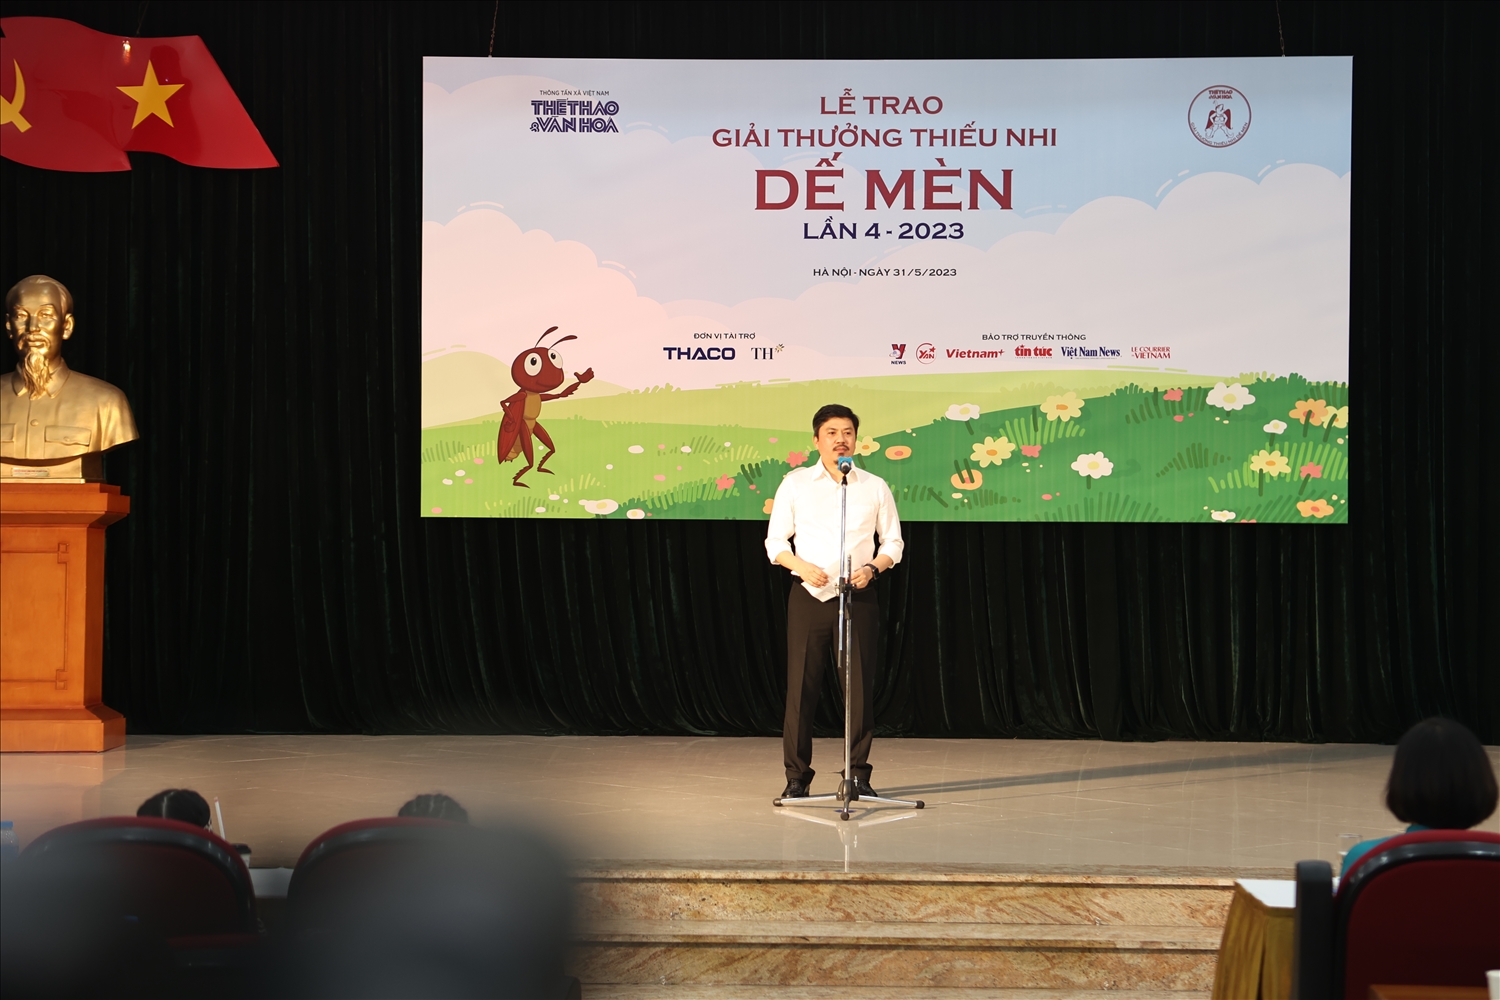 Nhà báo Lê Xuân Thành, Tổng Biên tập Báo Thể thao và Văn hóa, trưởng ban tổ chức giải thưởng phát biểu khai mạc